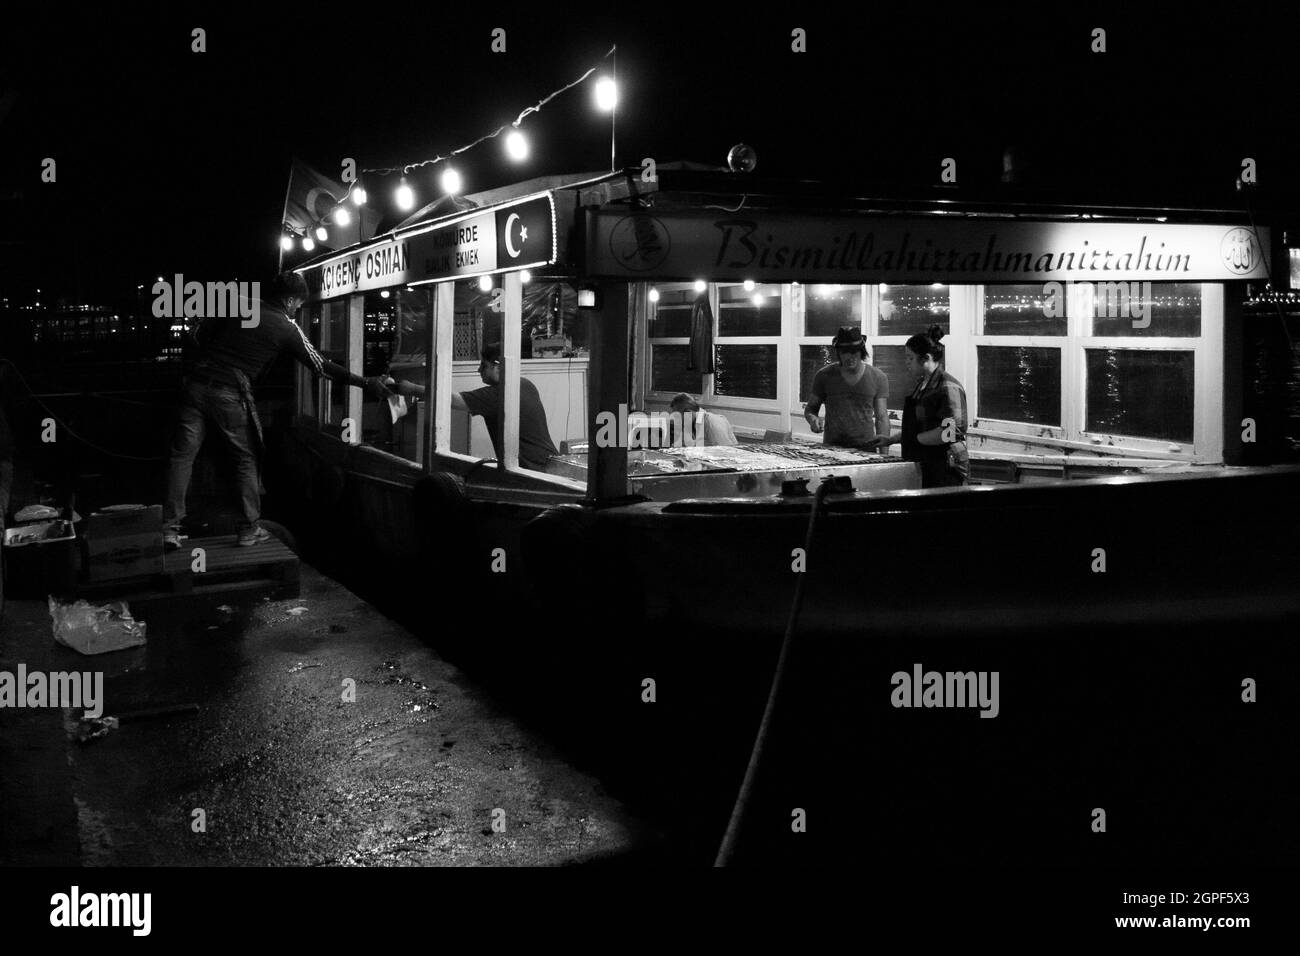 Istanbul, Türkei; 24. Mai 2013: Stand, der Makrelen-Sandwiches auf einem Boot verkauft. Stockfoto